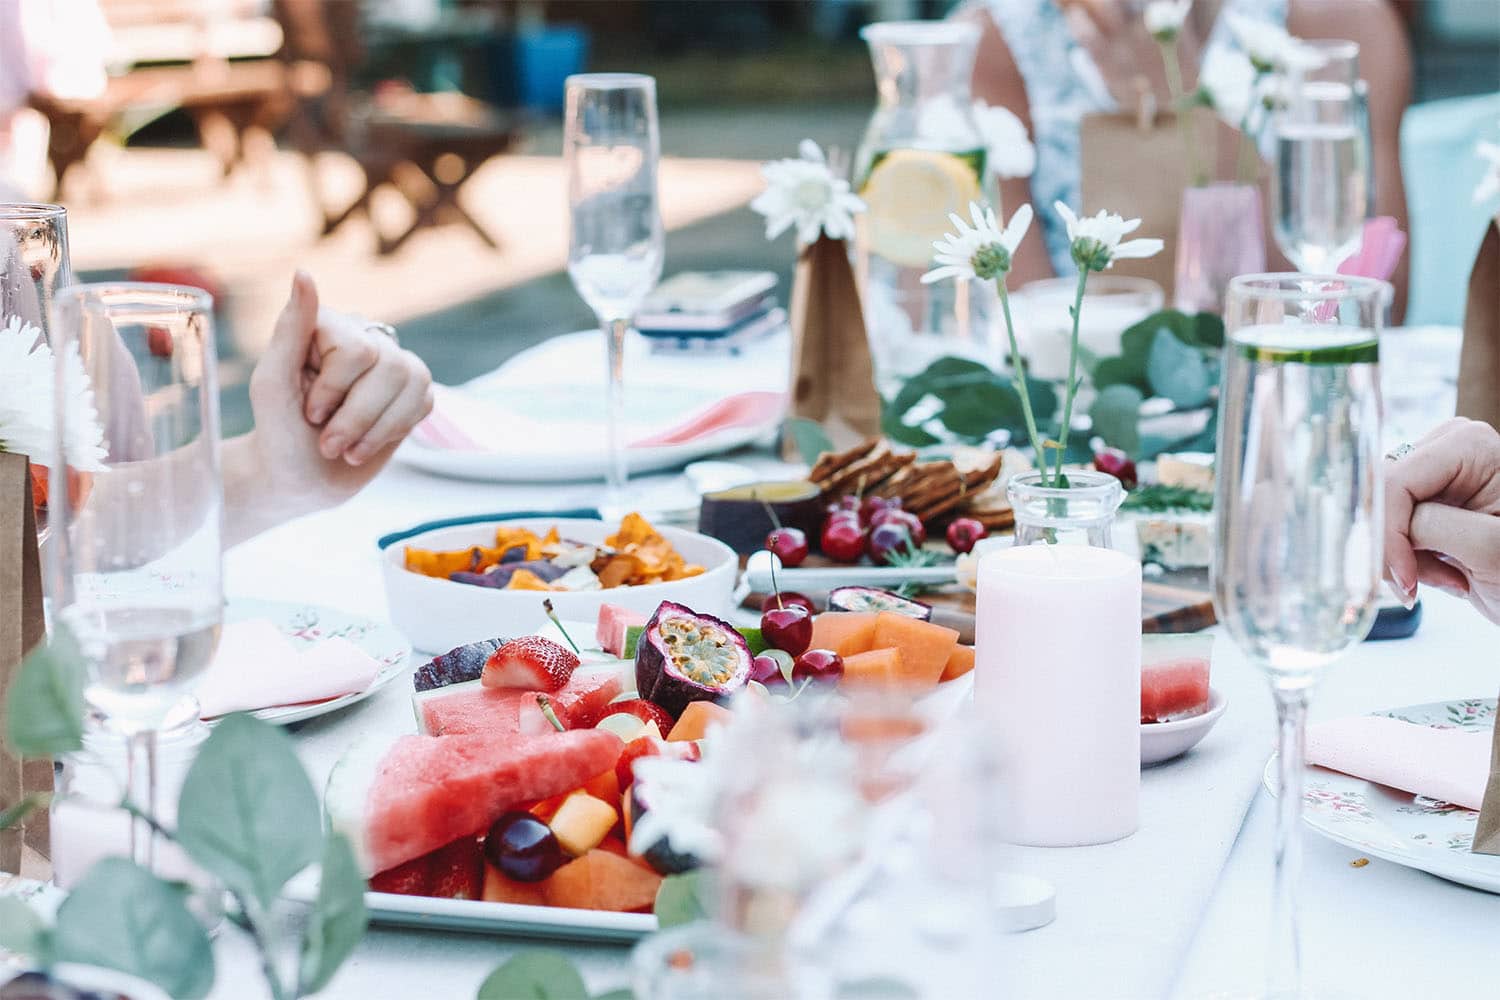 et dekket bord i sommerlige omgivelser fylt med mat og drikke